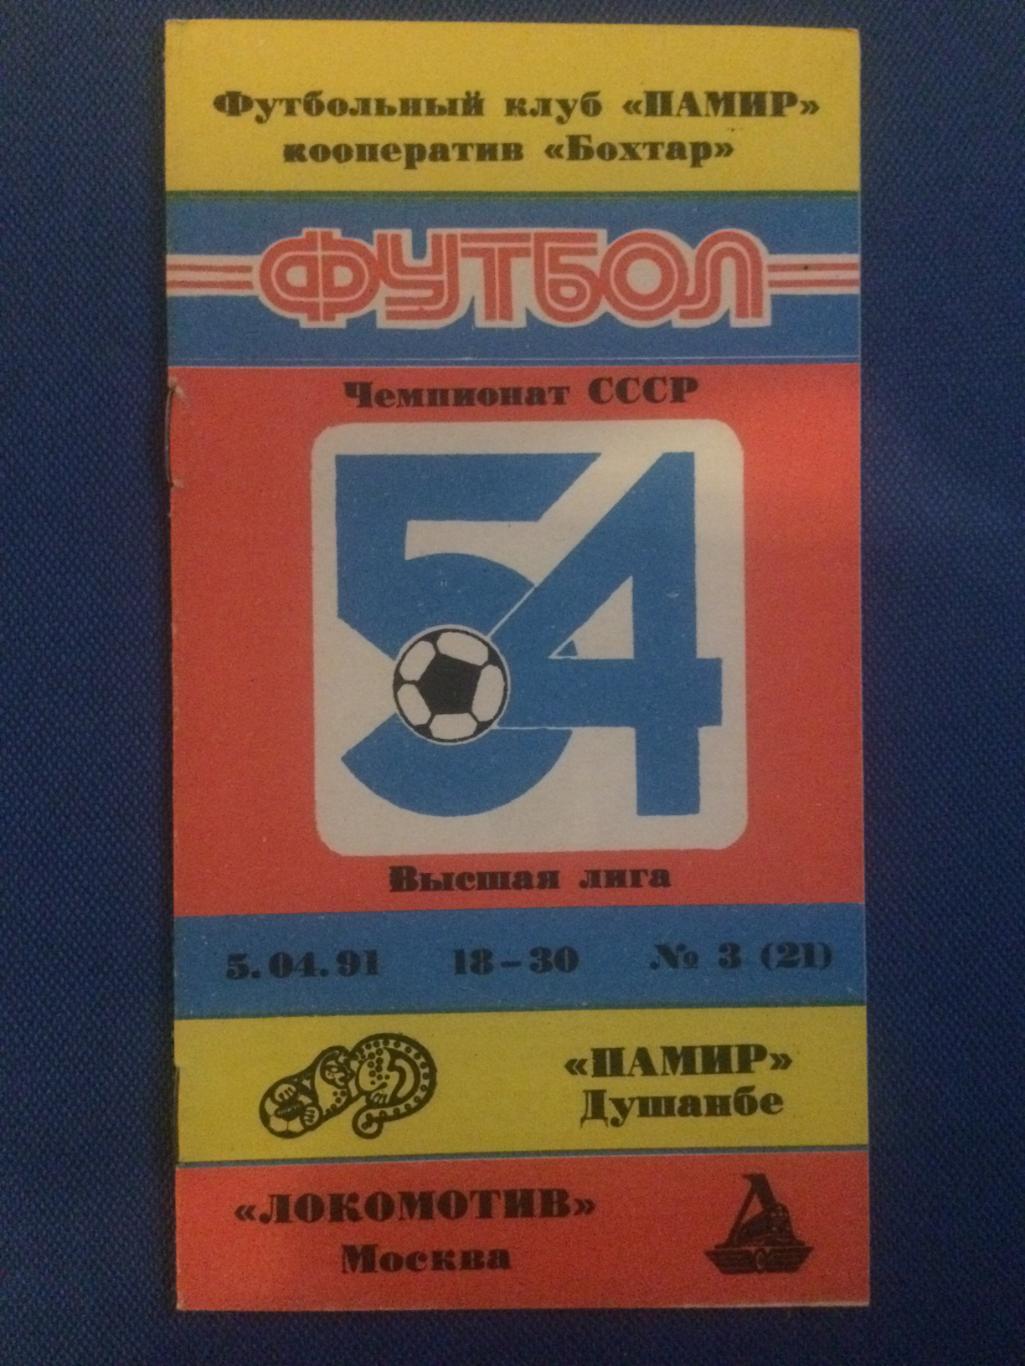 Памир (Душанбе) - Локомотив (М) 05.04.1991 г.